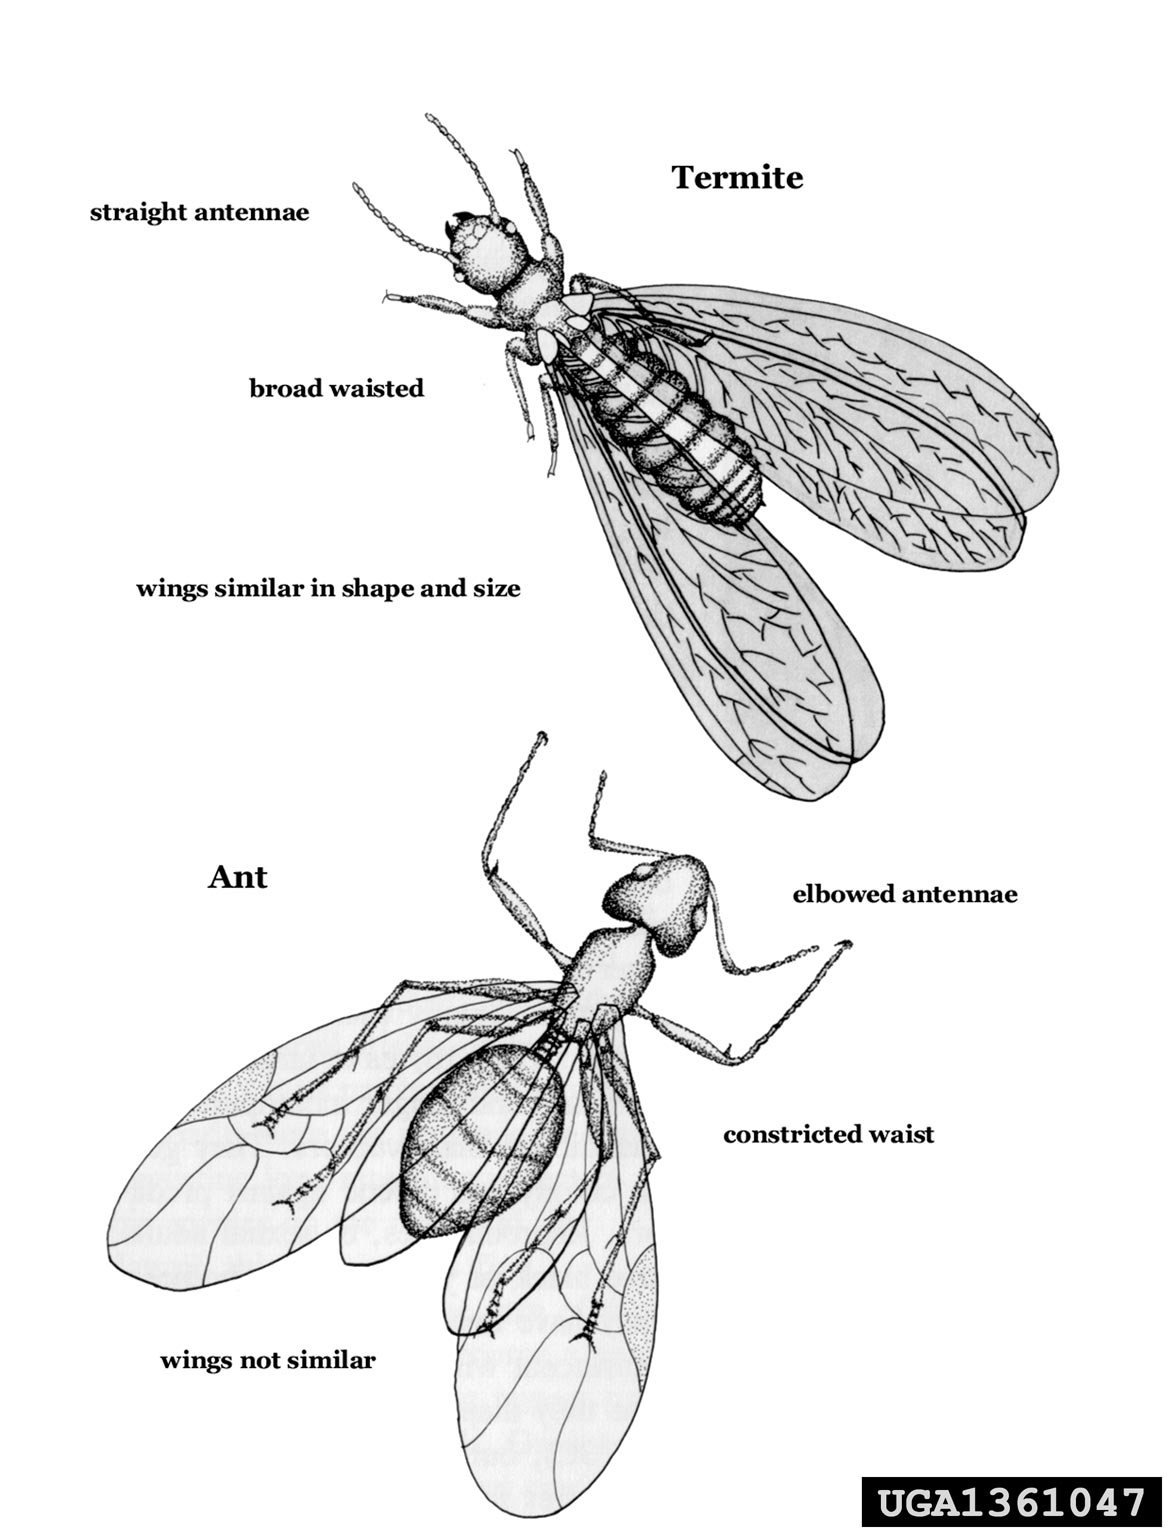 Termite Swarmer vs Winged Ant